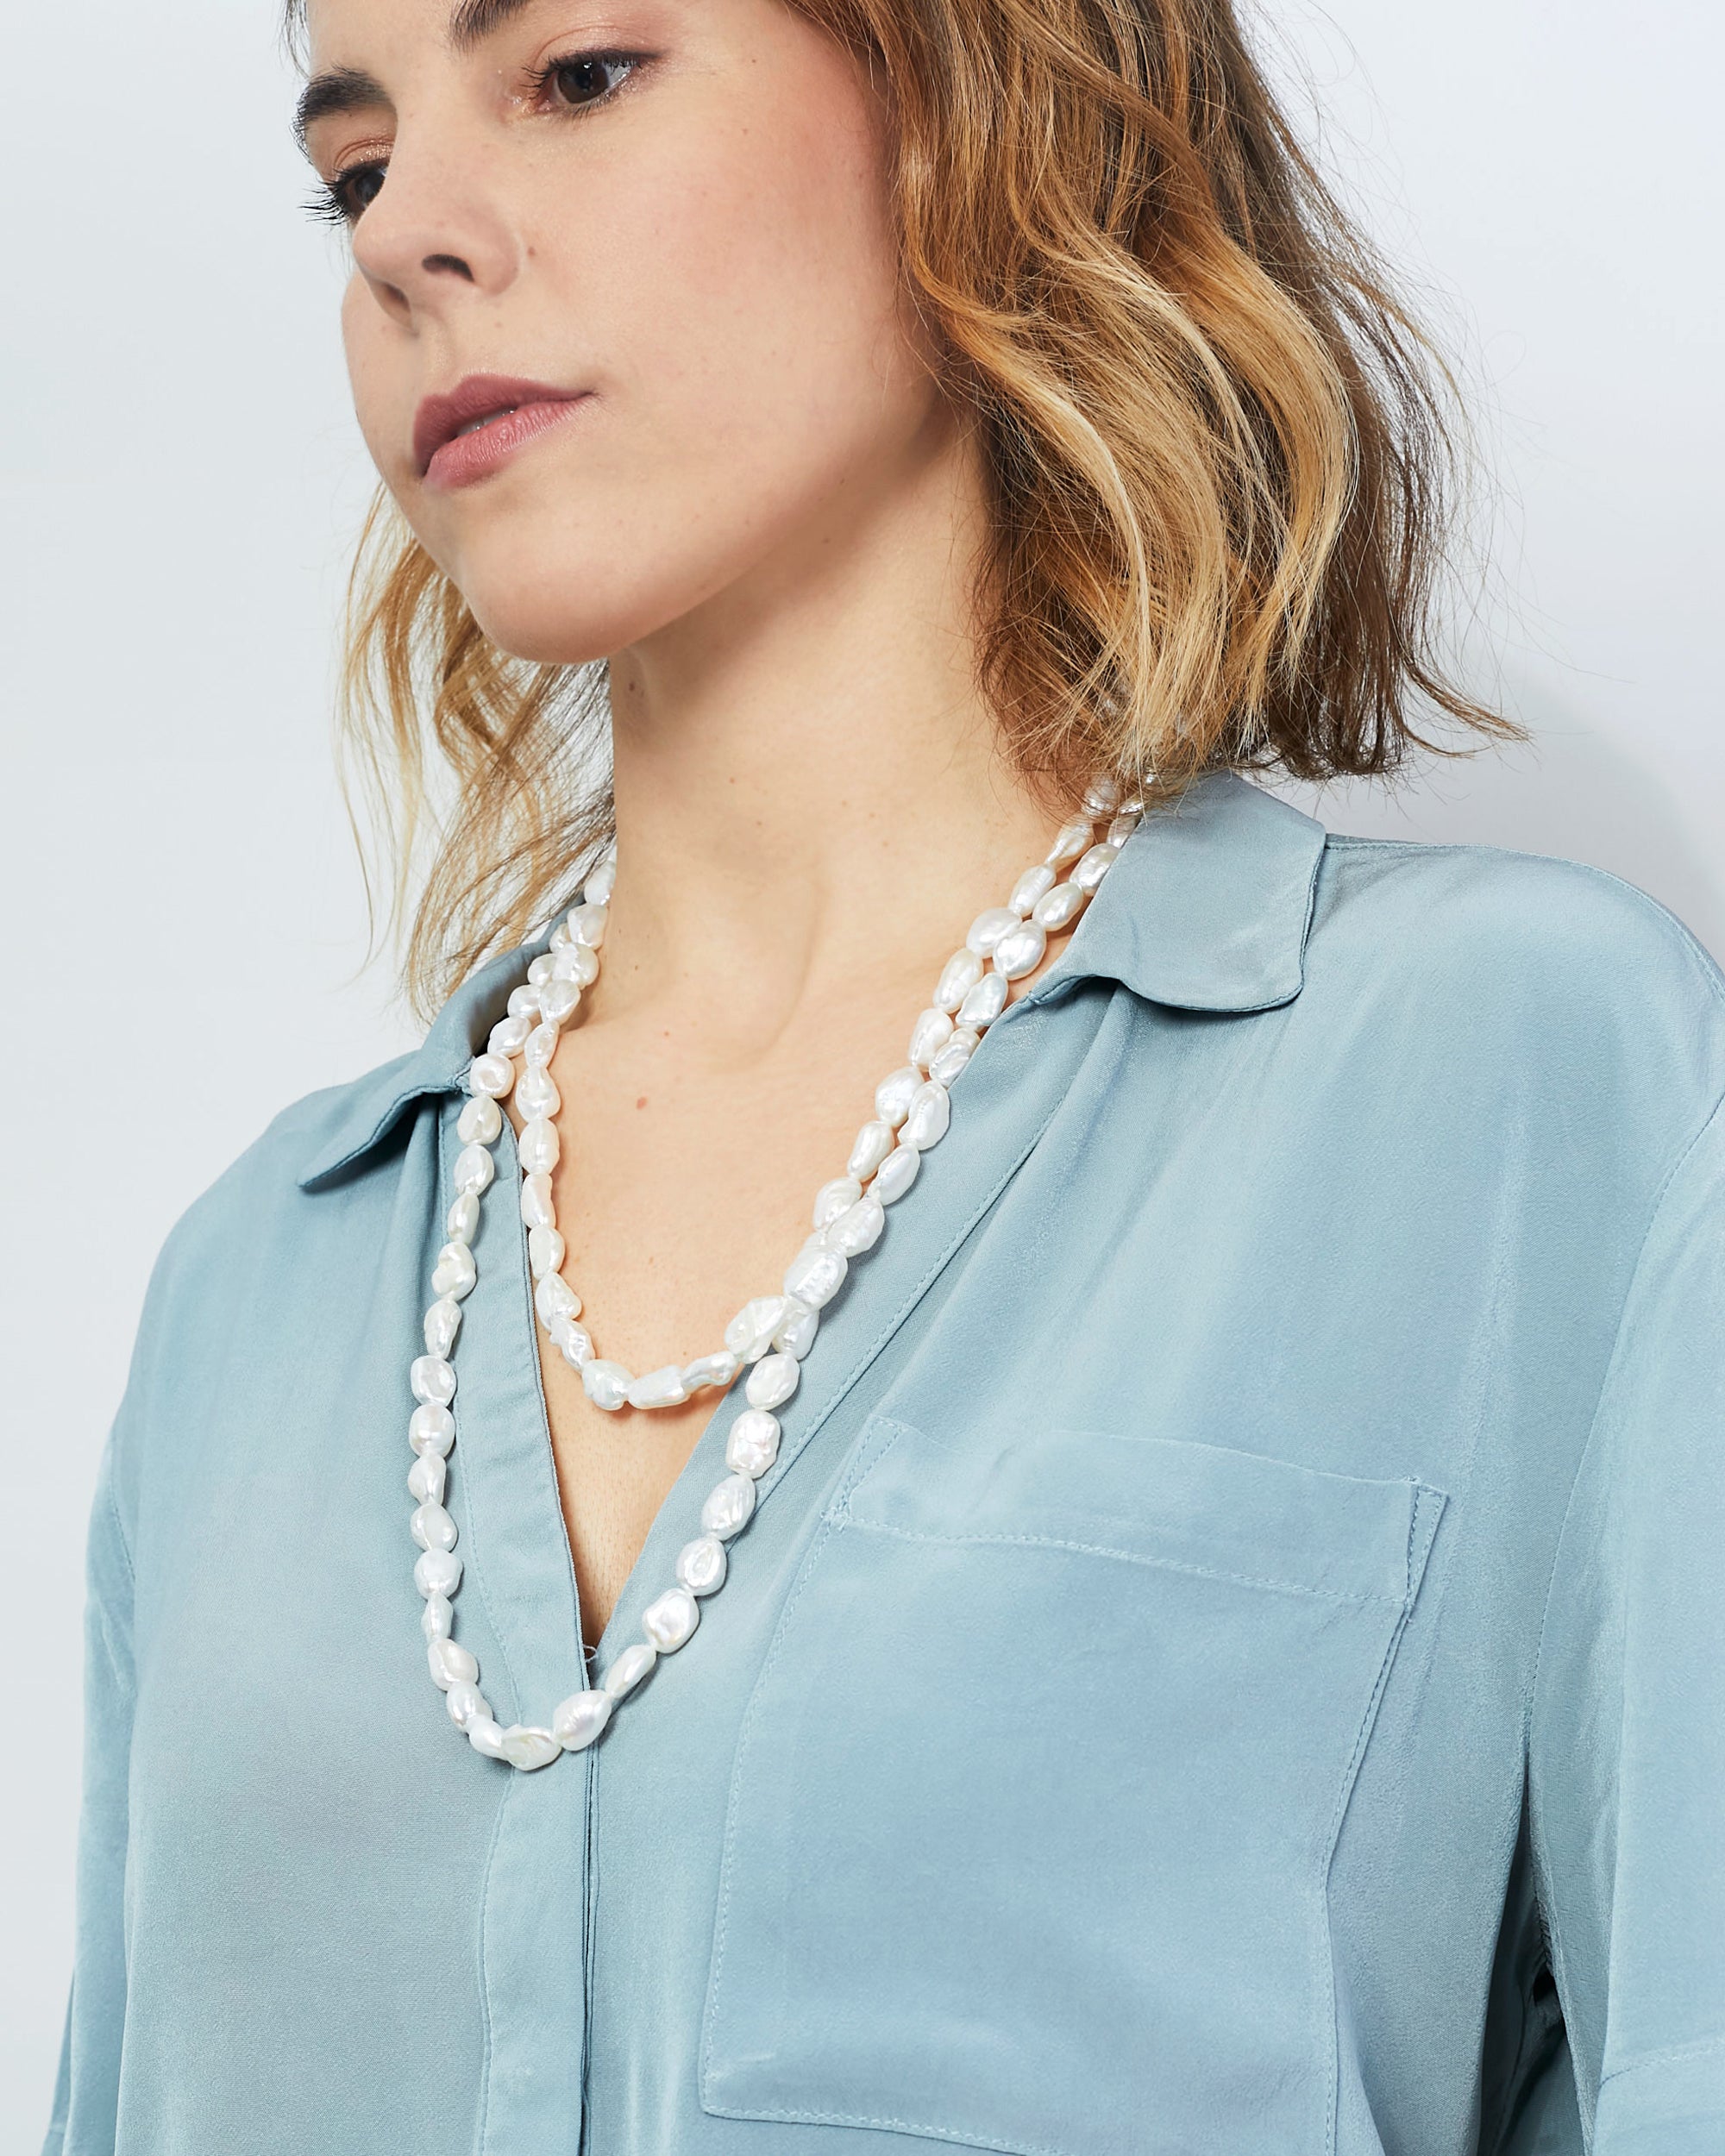 Collar de Perlas Cultivadas de Agua Dulce Barrocas Keshi de 8-10 mm, 120 cm de largo Secret & You